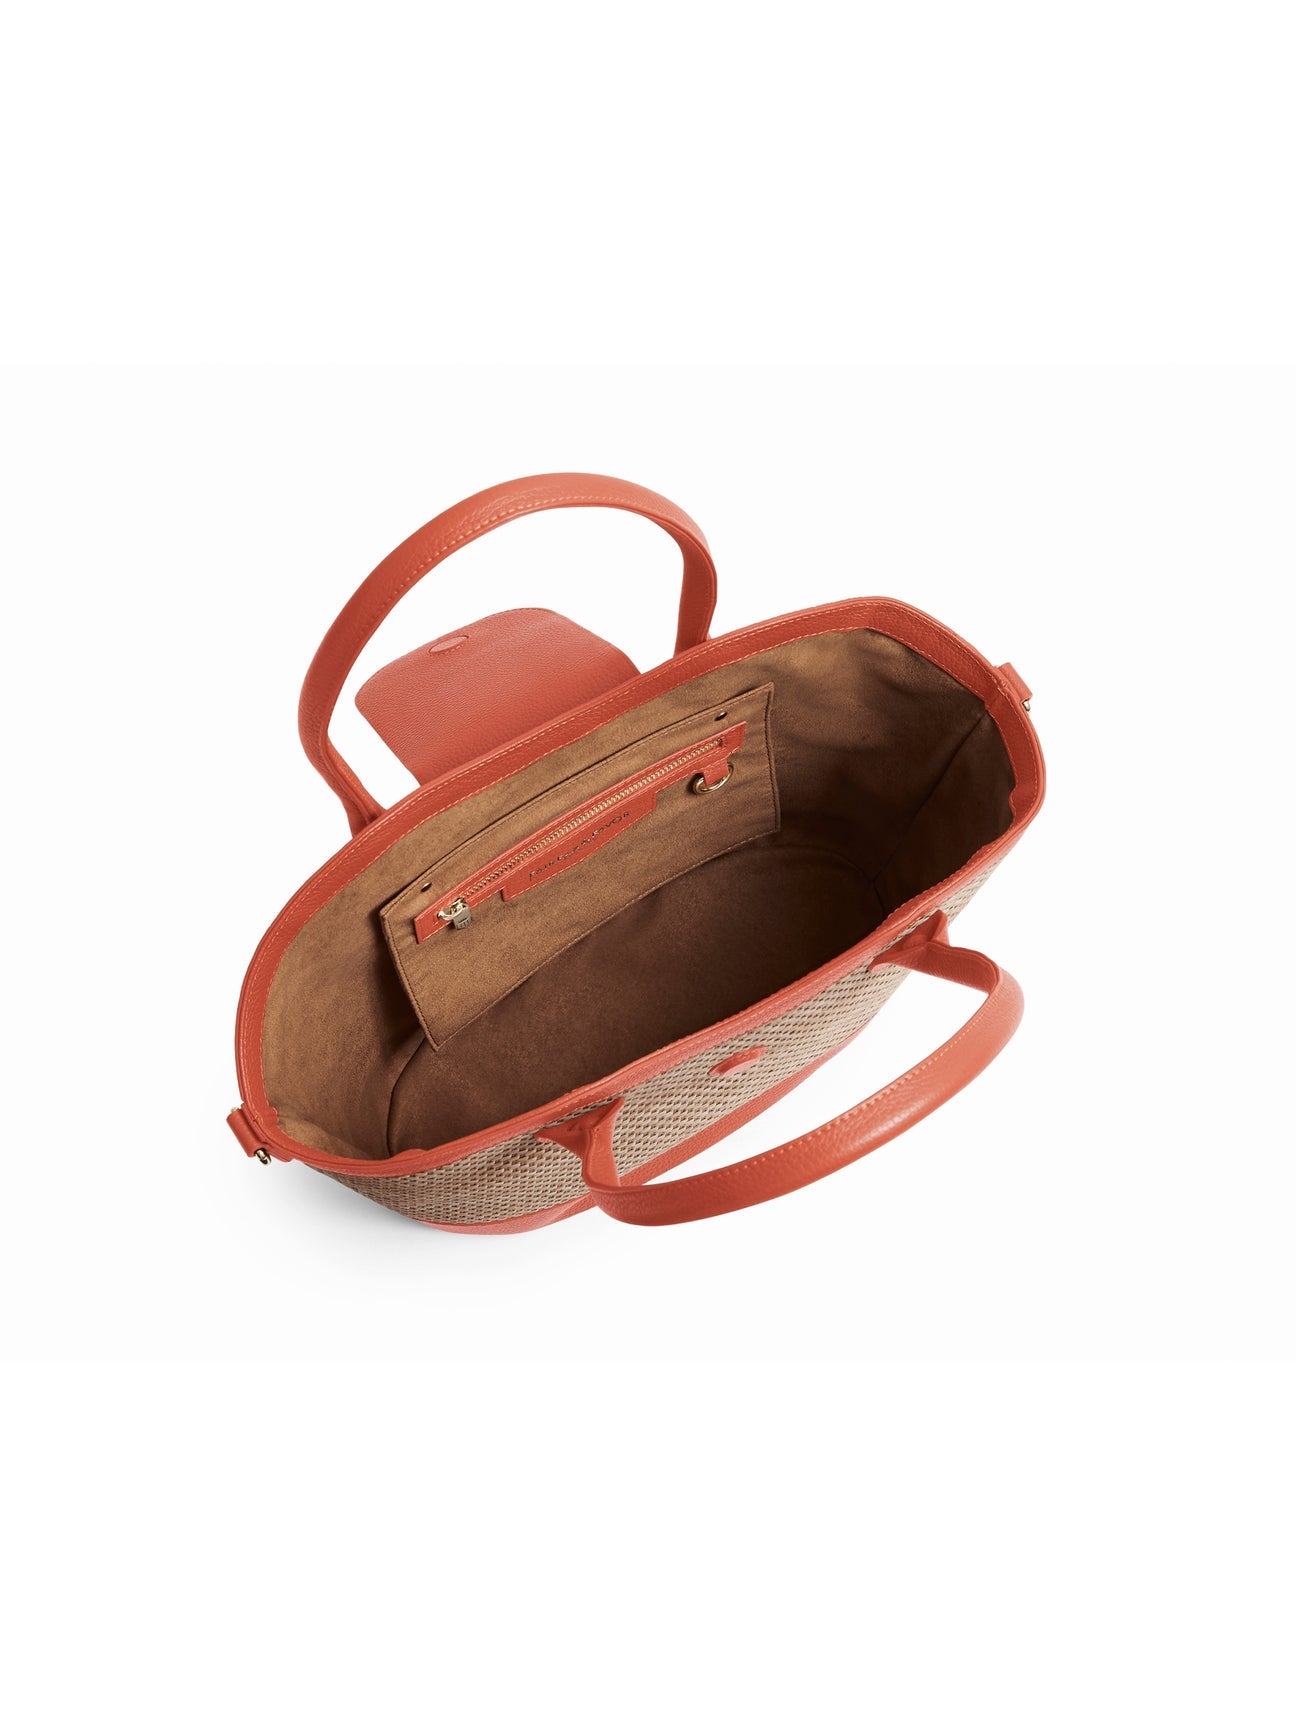 Windsor
Women's Basket Bag - Melon Leather